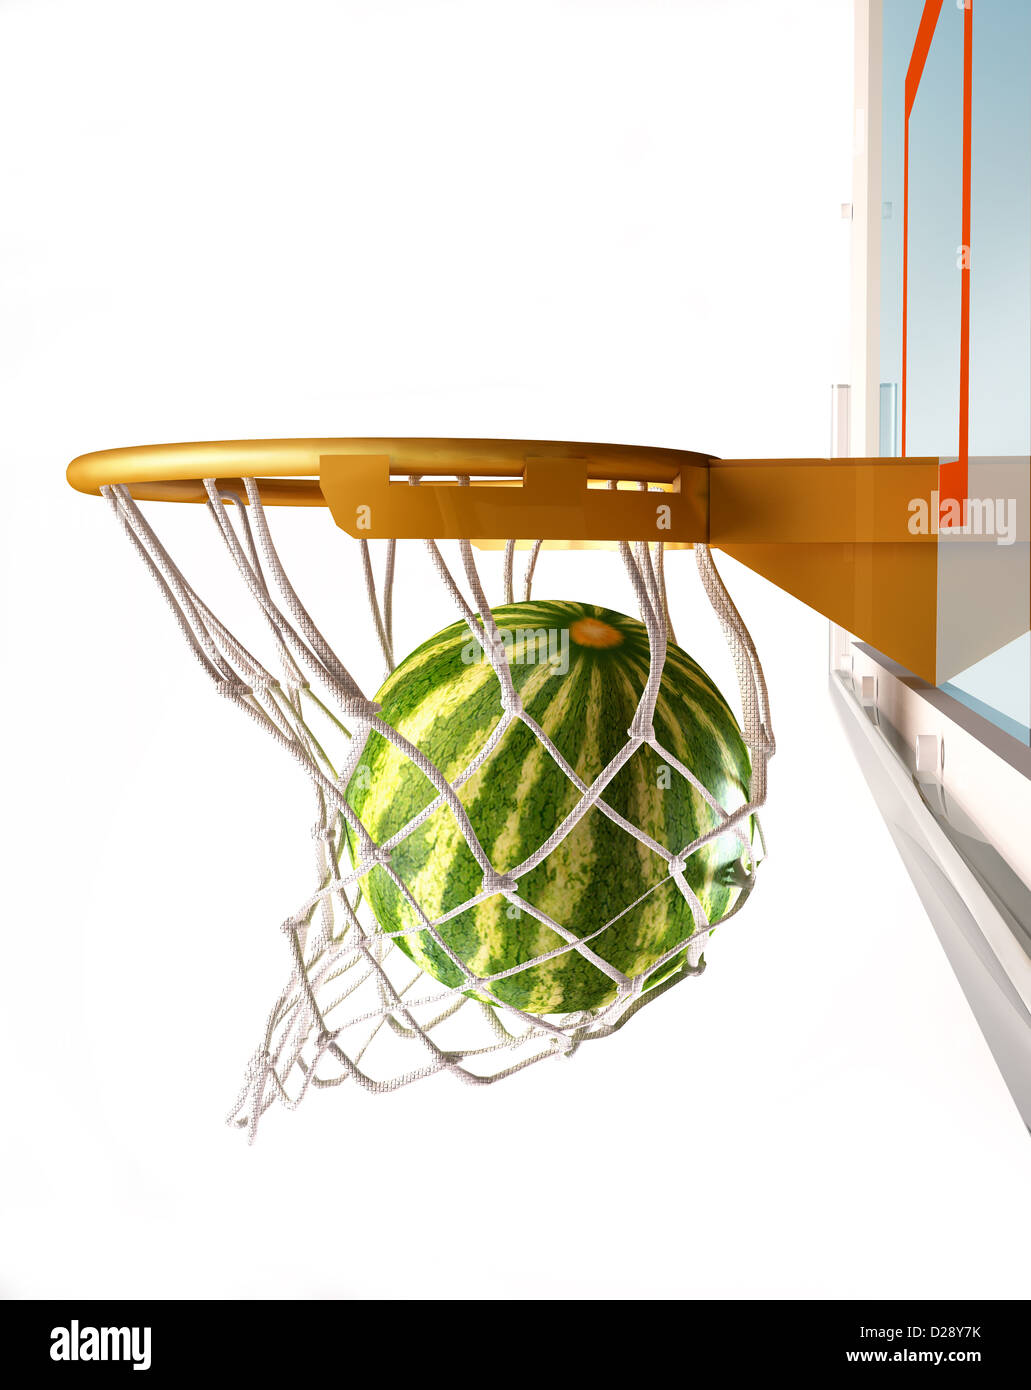 Le centrage de la pastèque (panier de basket-ball), avec le melon à l'intérieur du filet, vue rapprochée, sur fond blanc. Banque D'Images